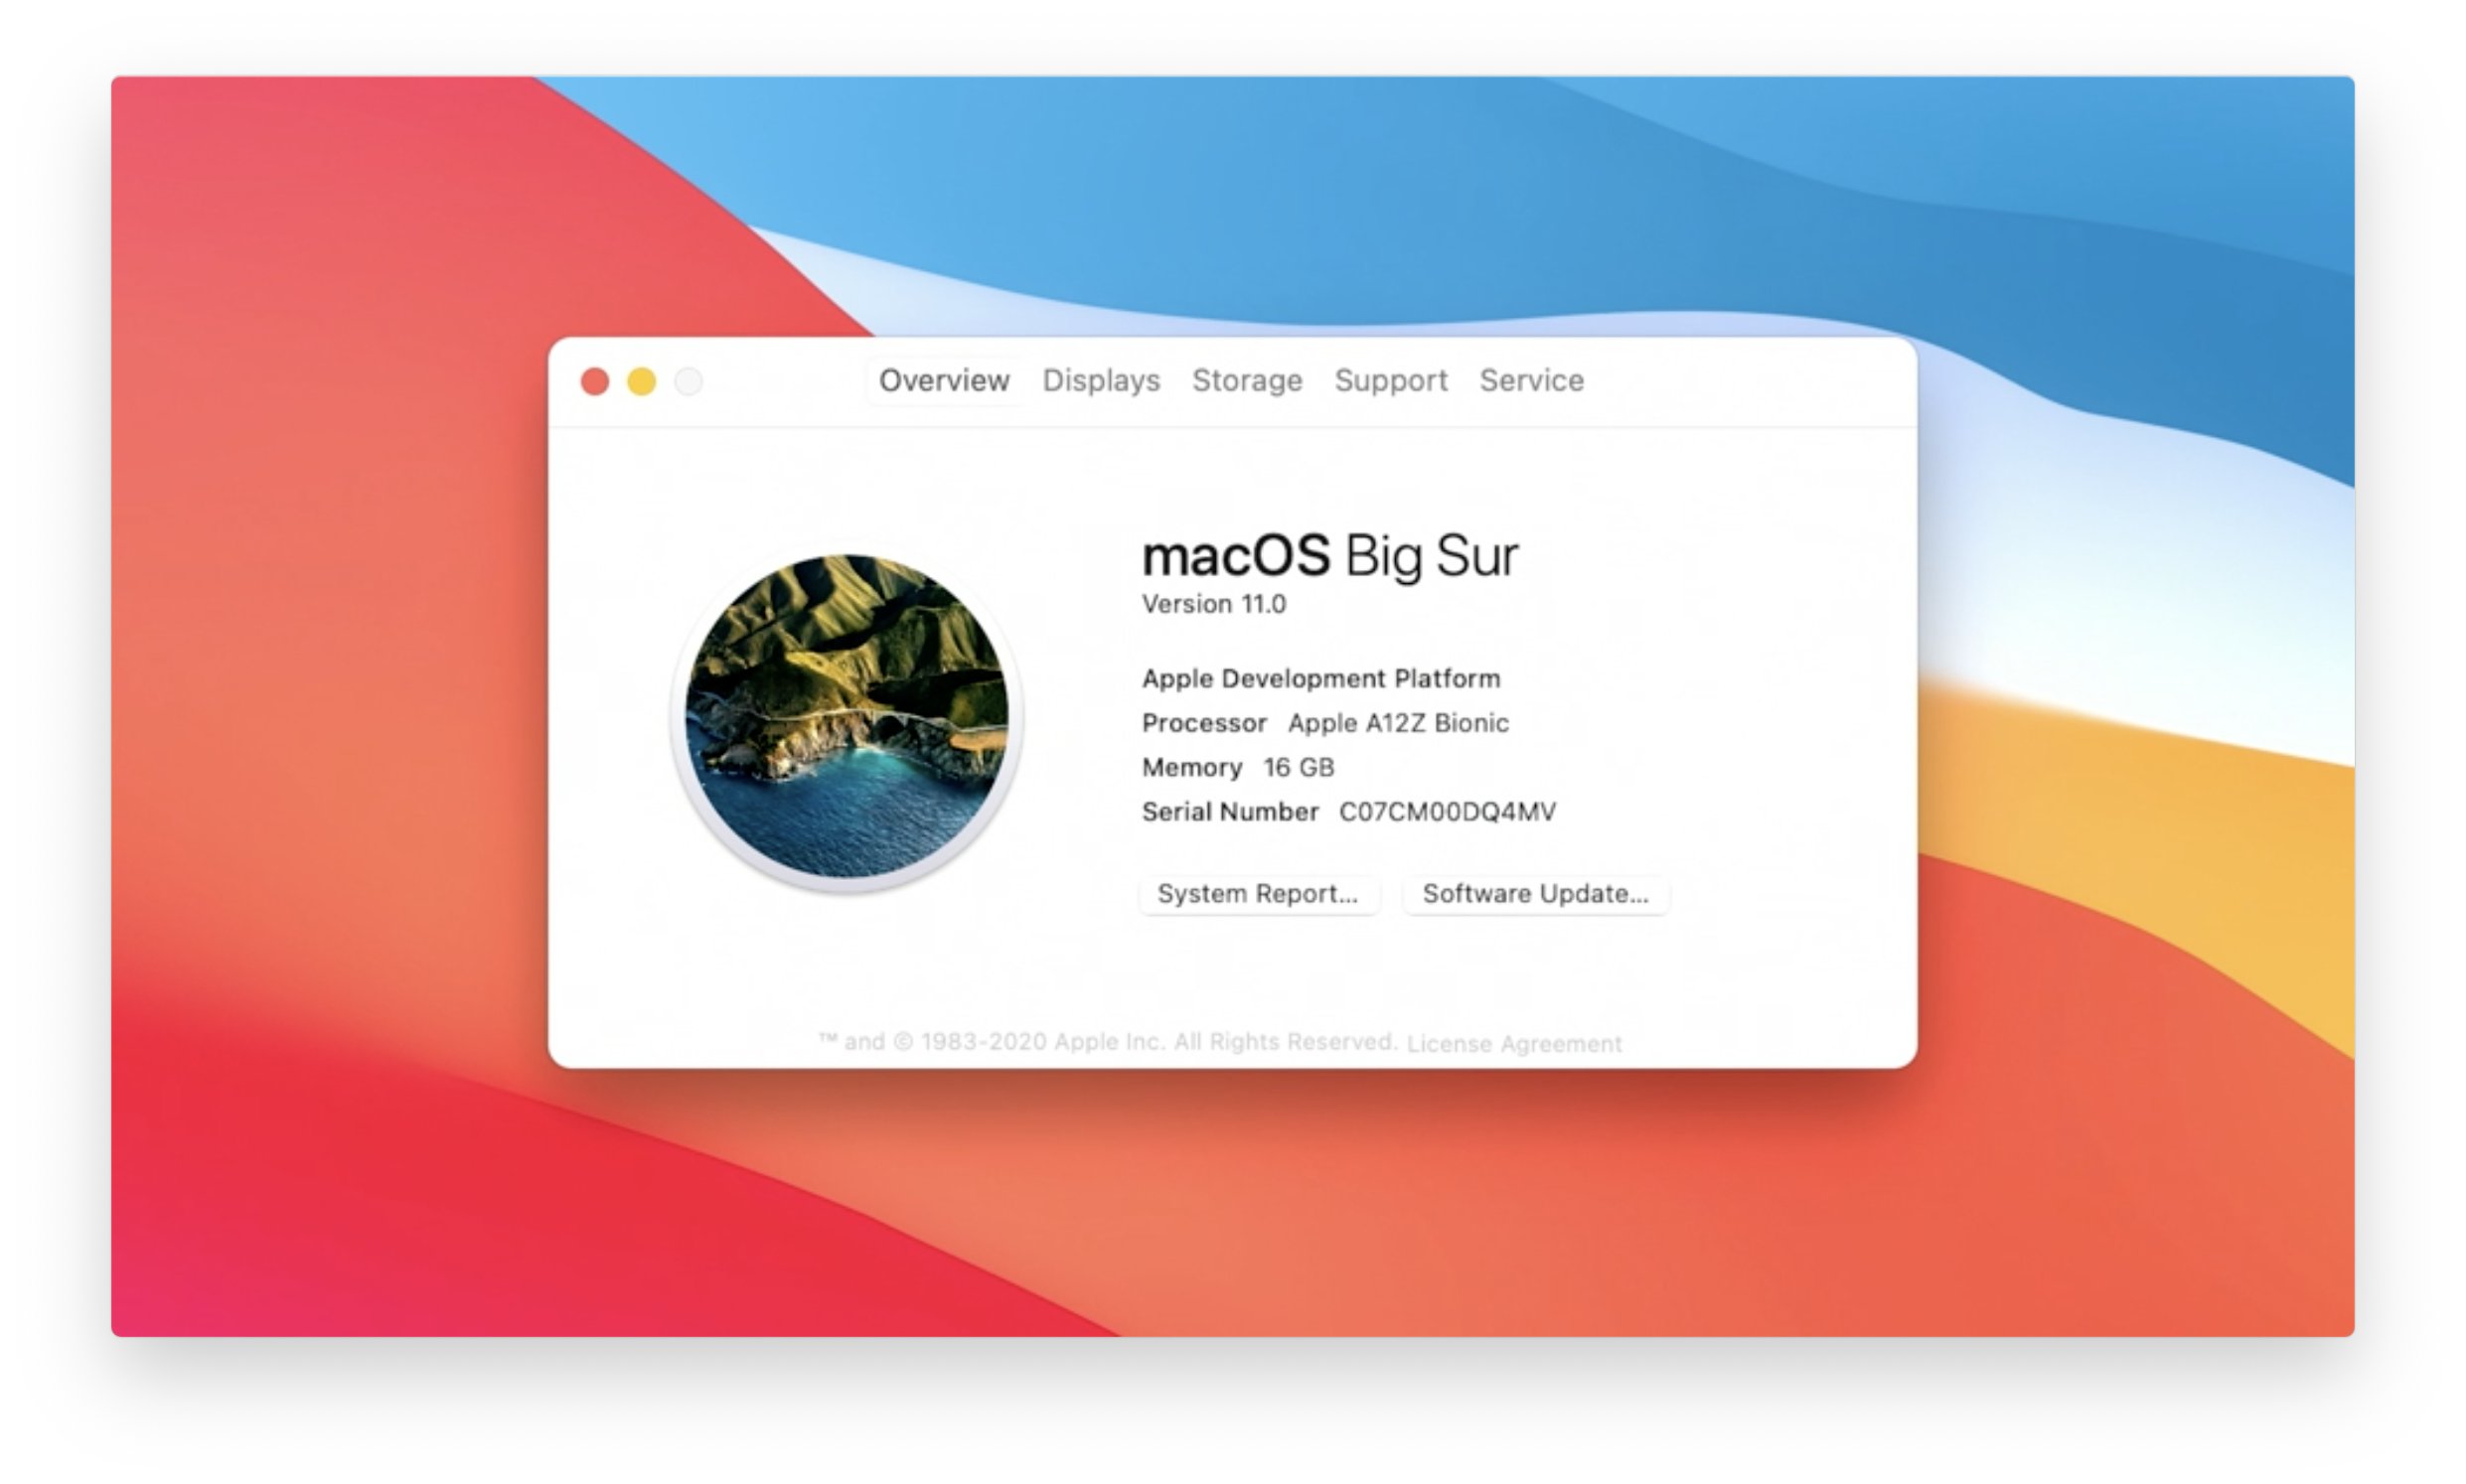 ｢macOS Big Sur｣のバージョンは｢11.0｣